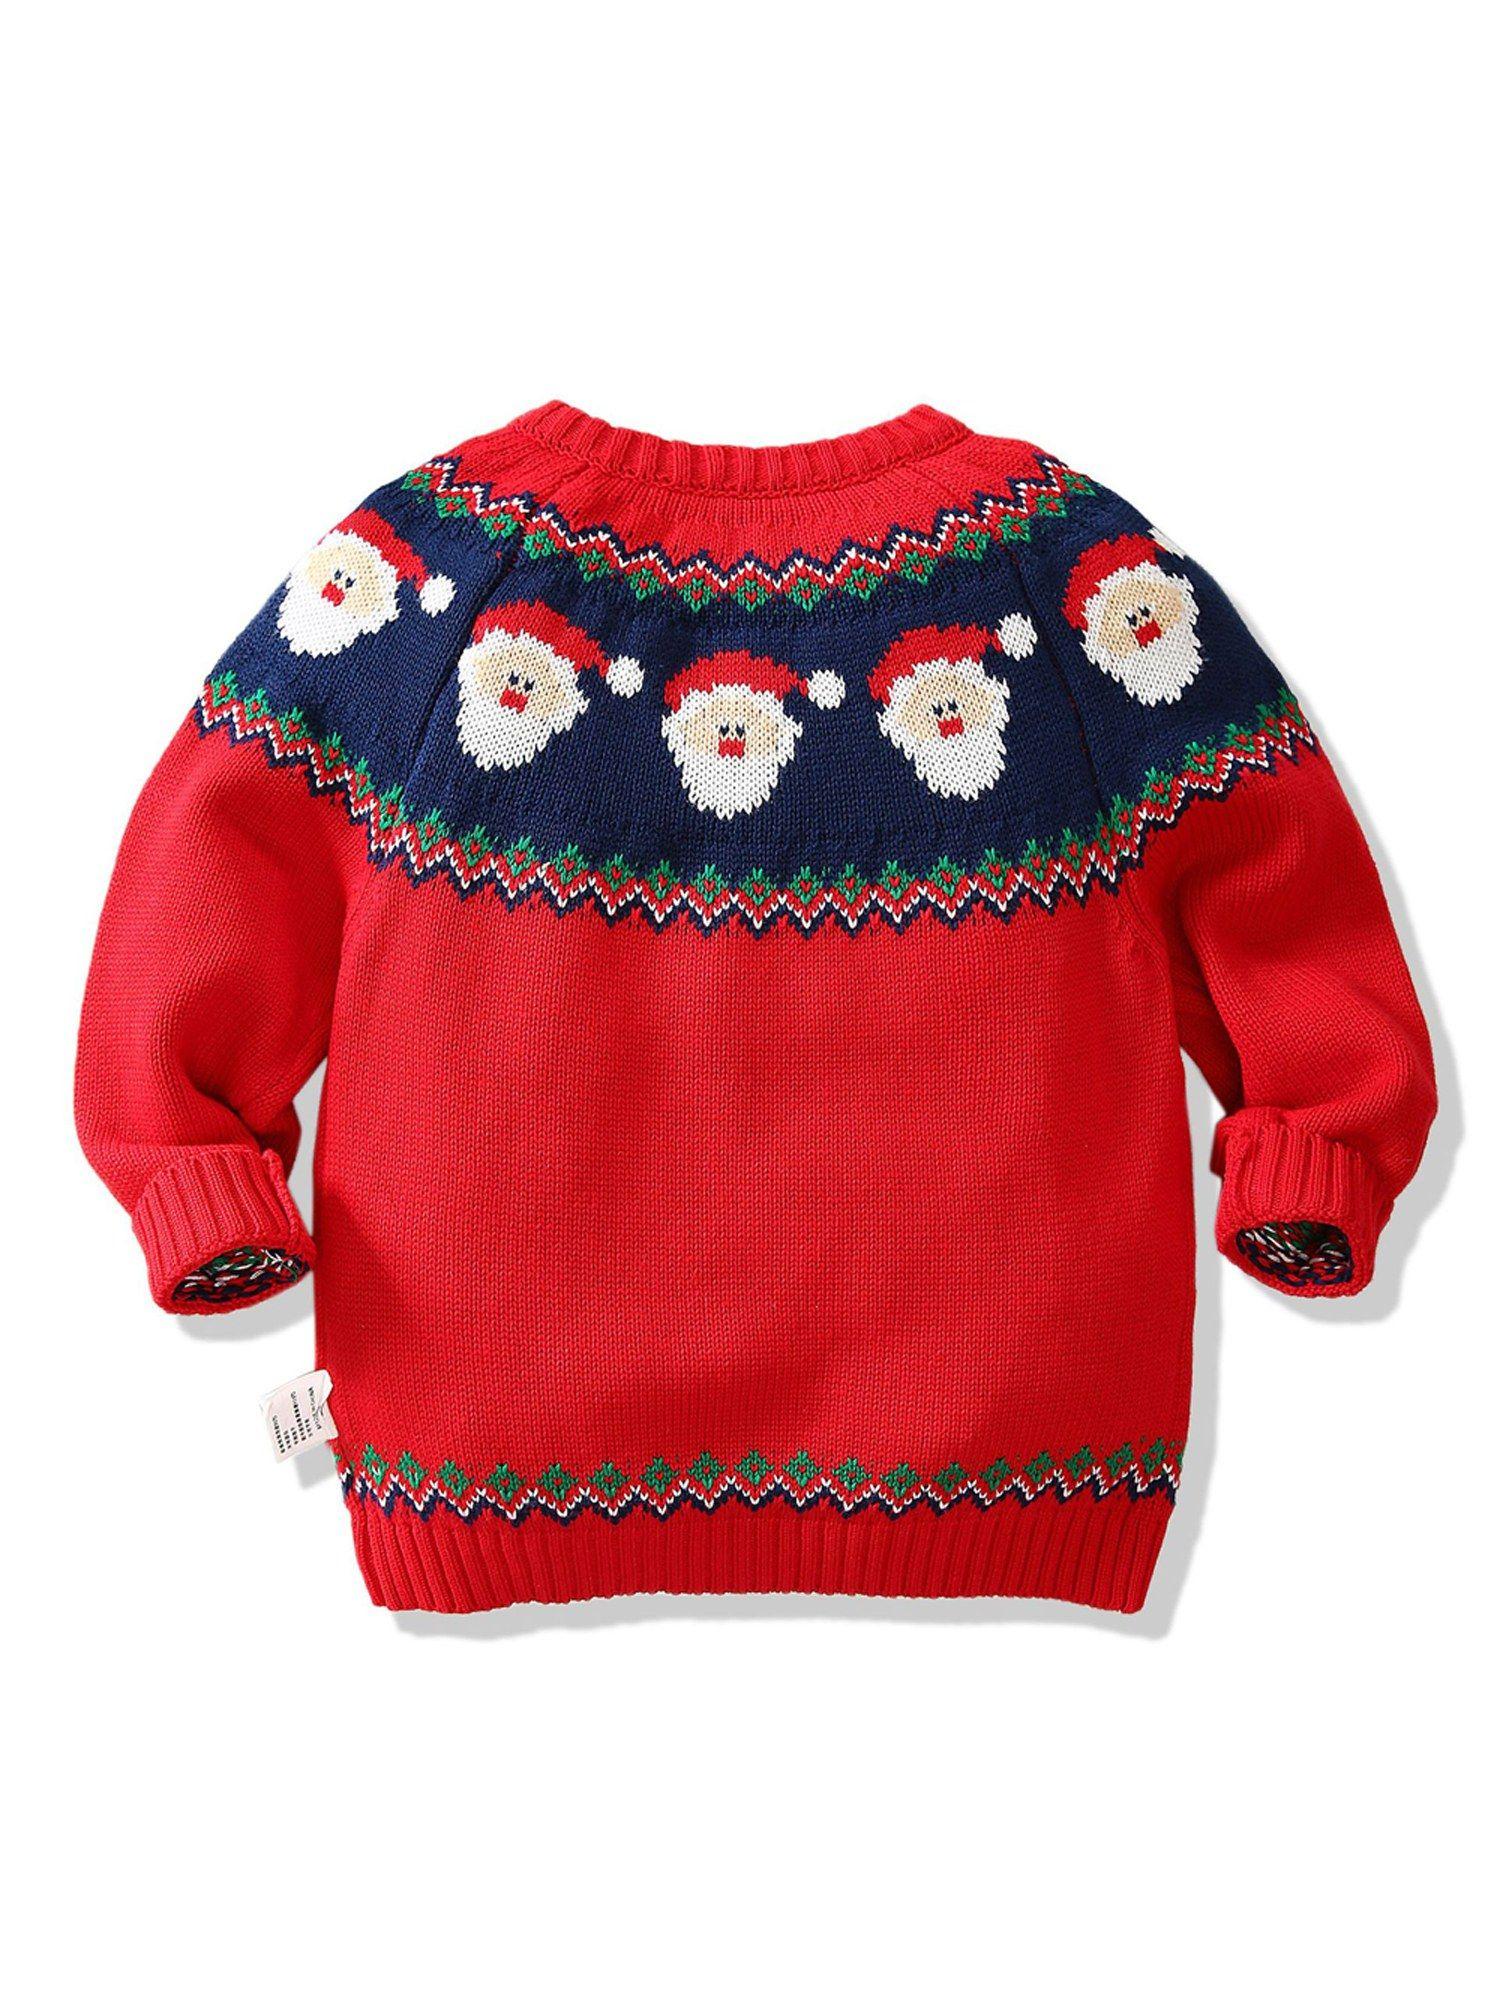 kids red & navy hoho cardigan sweater round neck